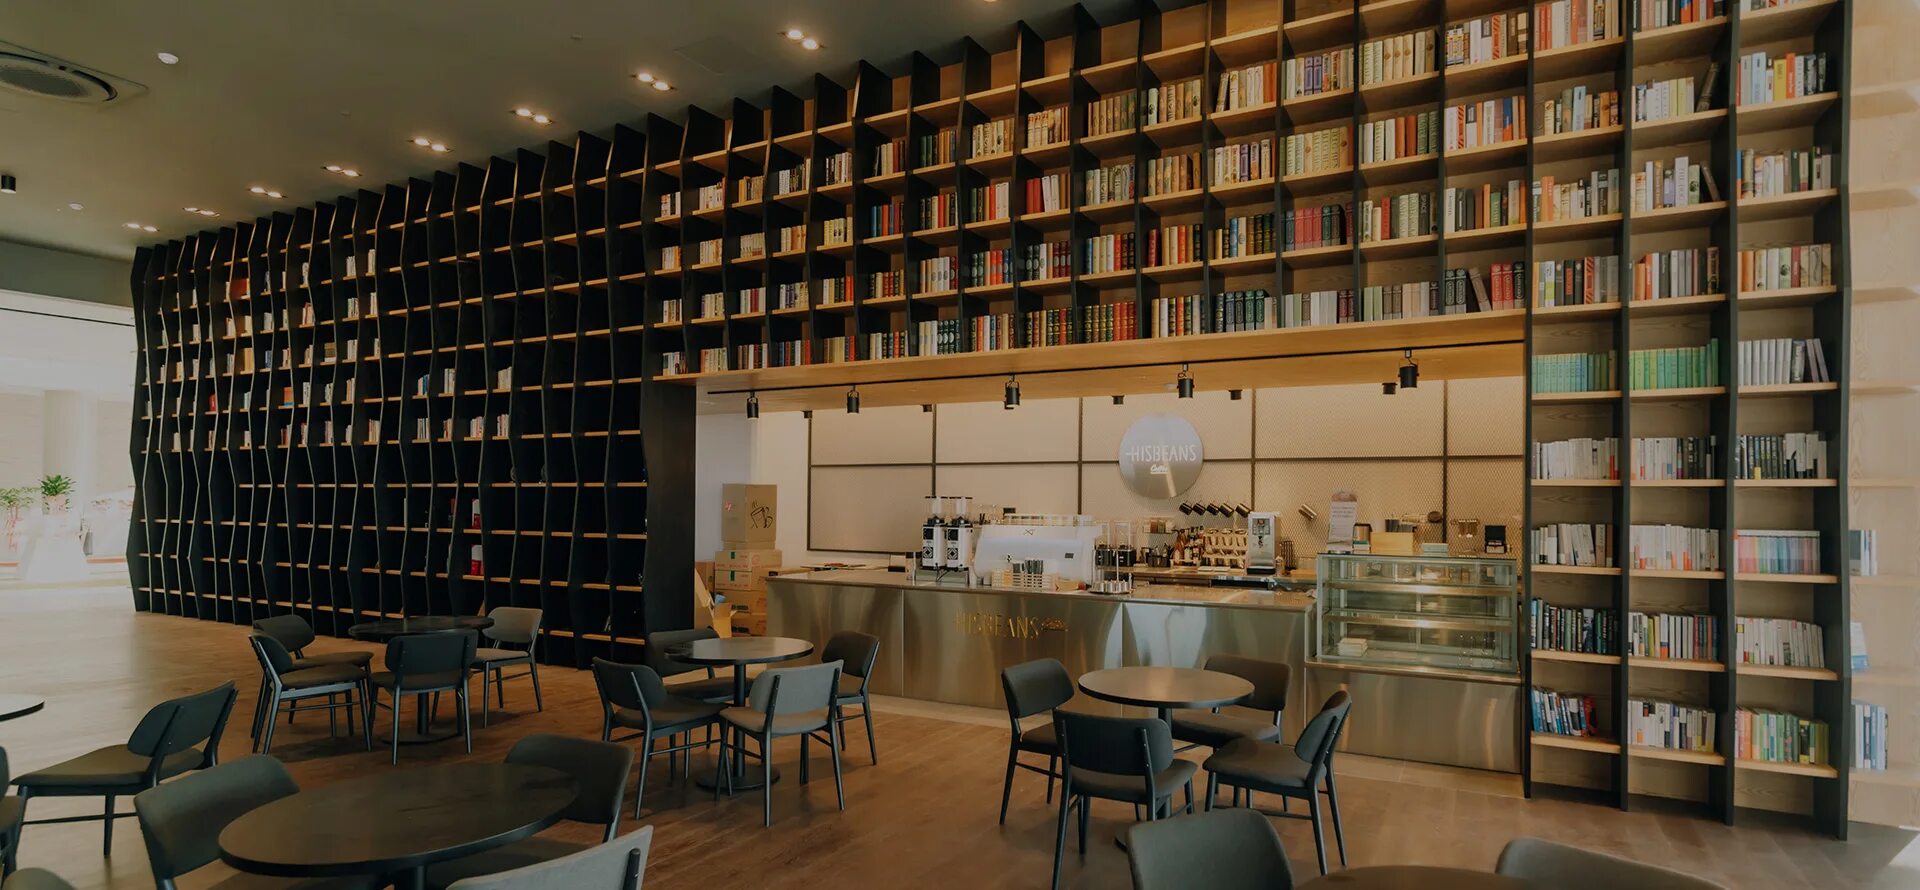 Book Cafe бук кафе. Кофейня библиотека. Книжные полки в кофейне. Книжное кафе.